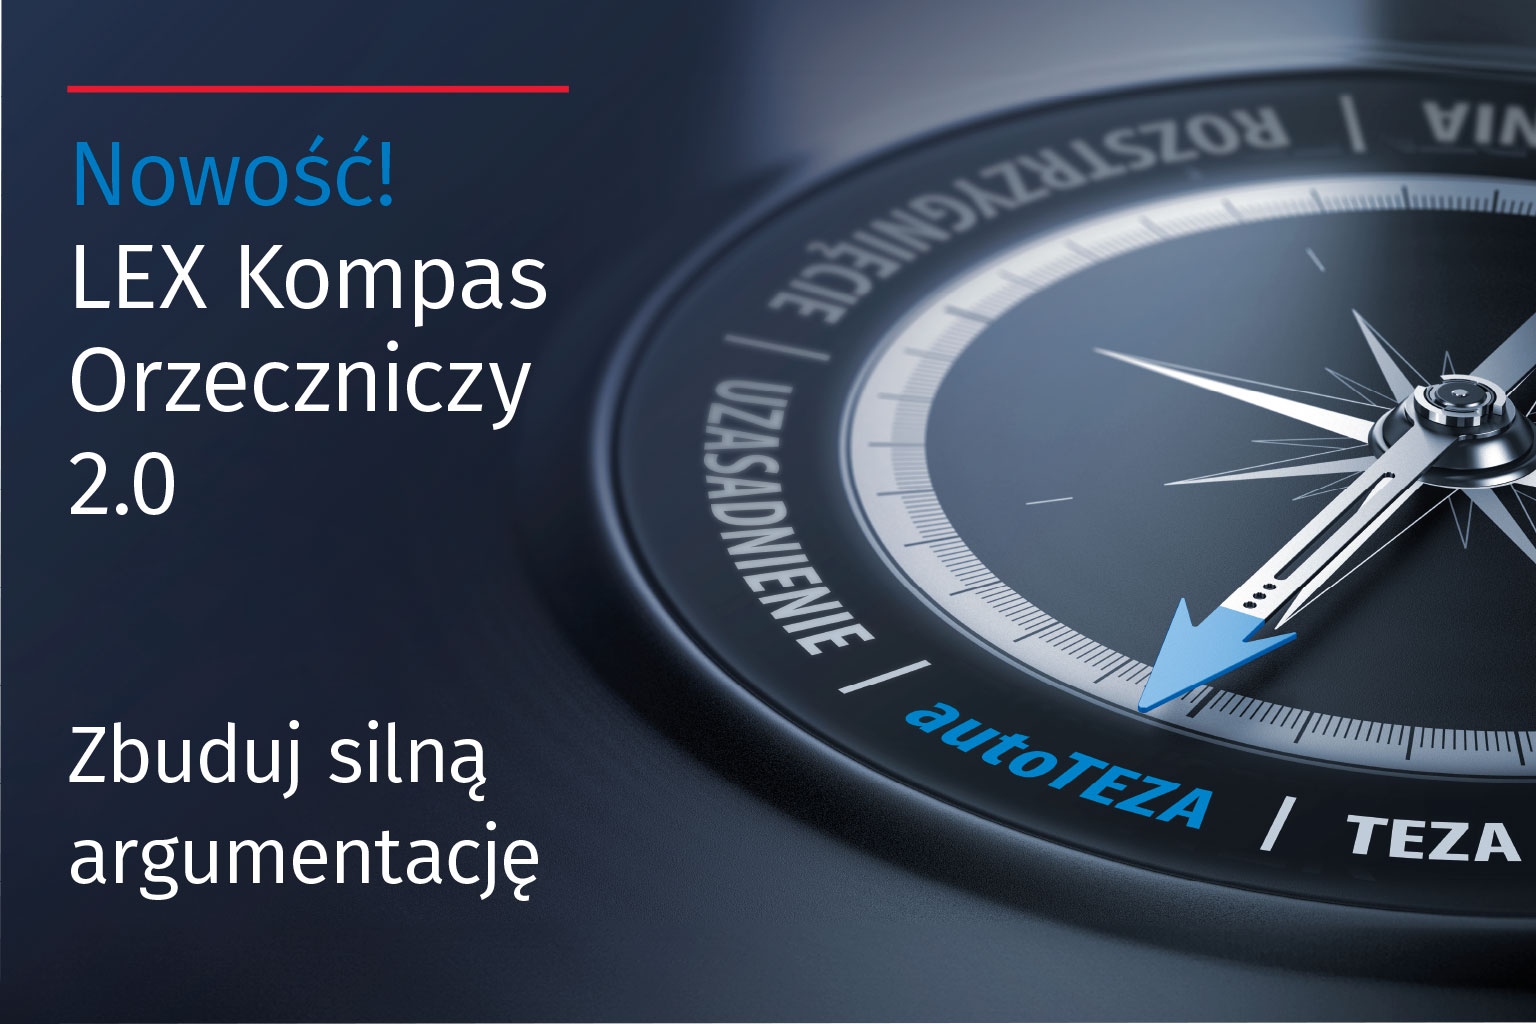 LEX Kompas Orzeczniczy 2.0